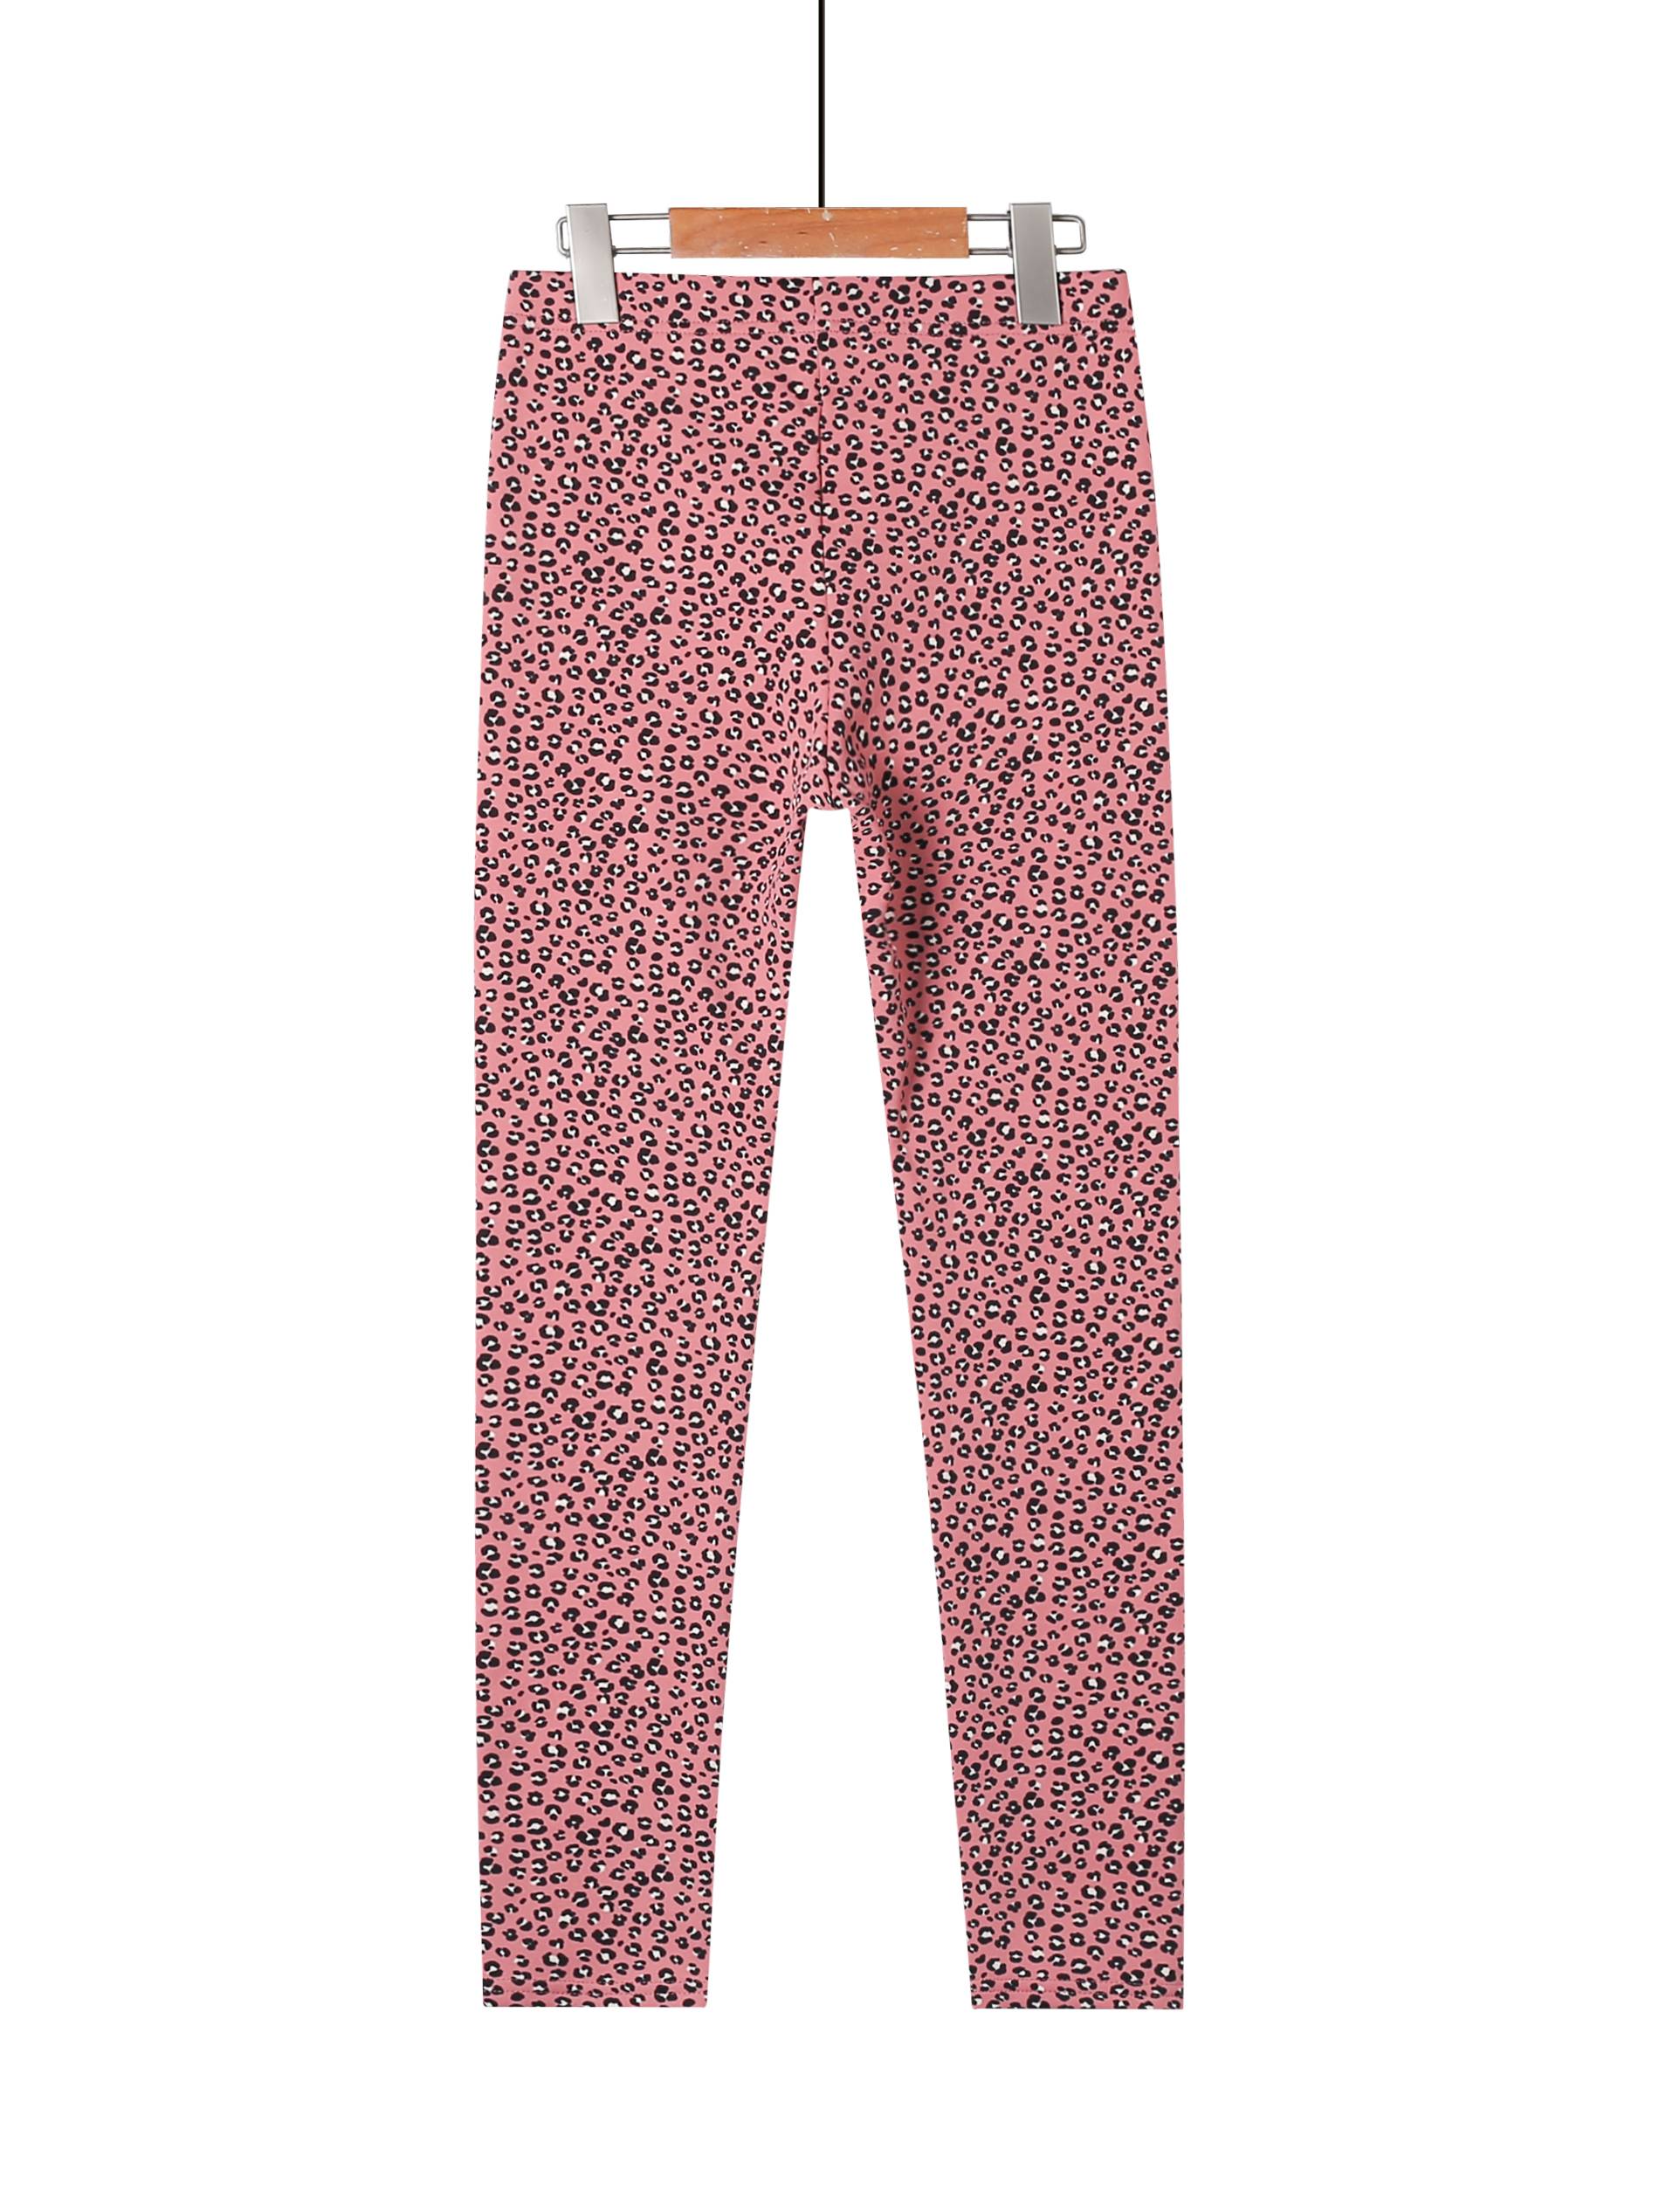 print Girl\'s leggings-Leopard